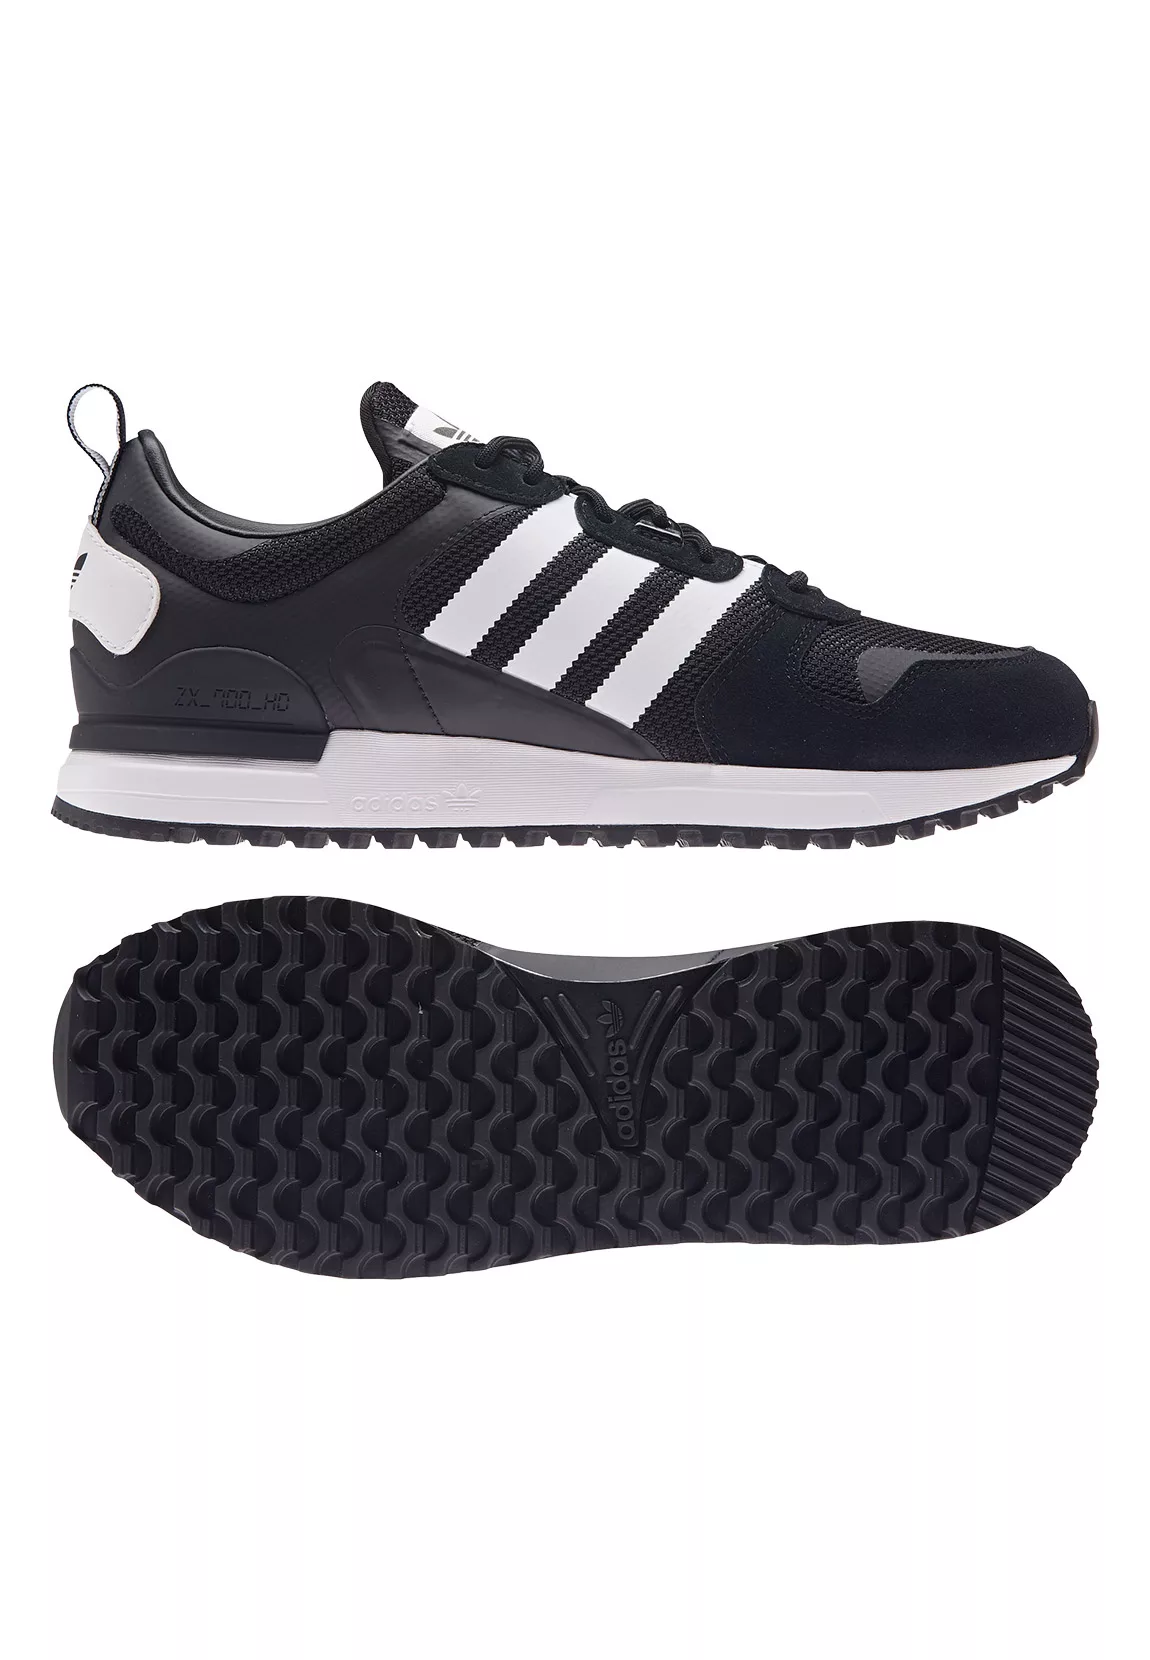 Adidas Originals Zx 700 Hd Sportschuhe EU 41 1/3 Core Black / Footwear Whit günstig online kaufen